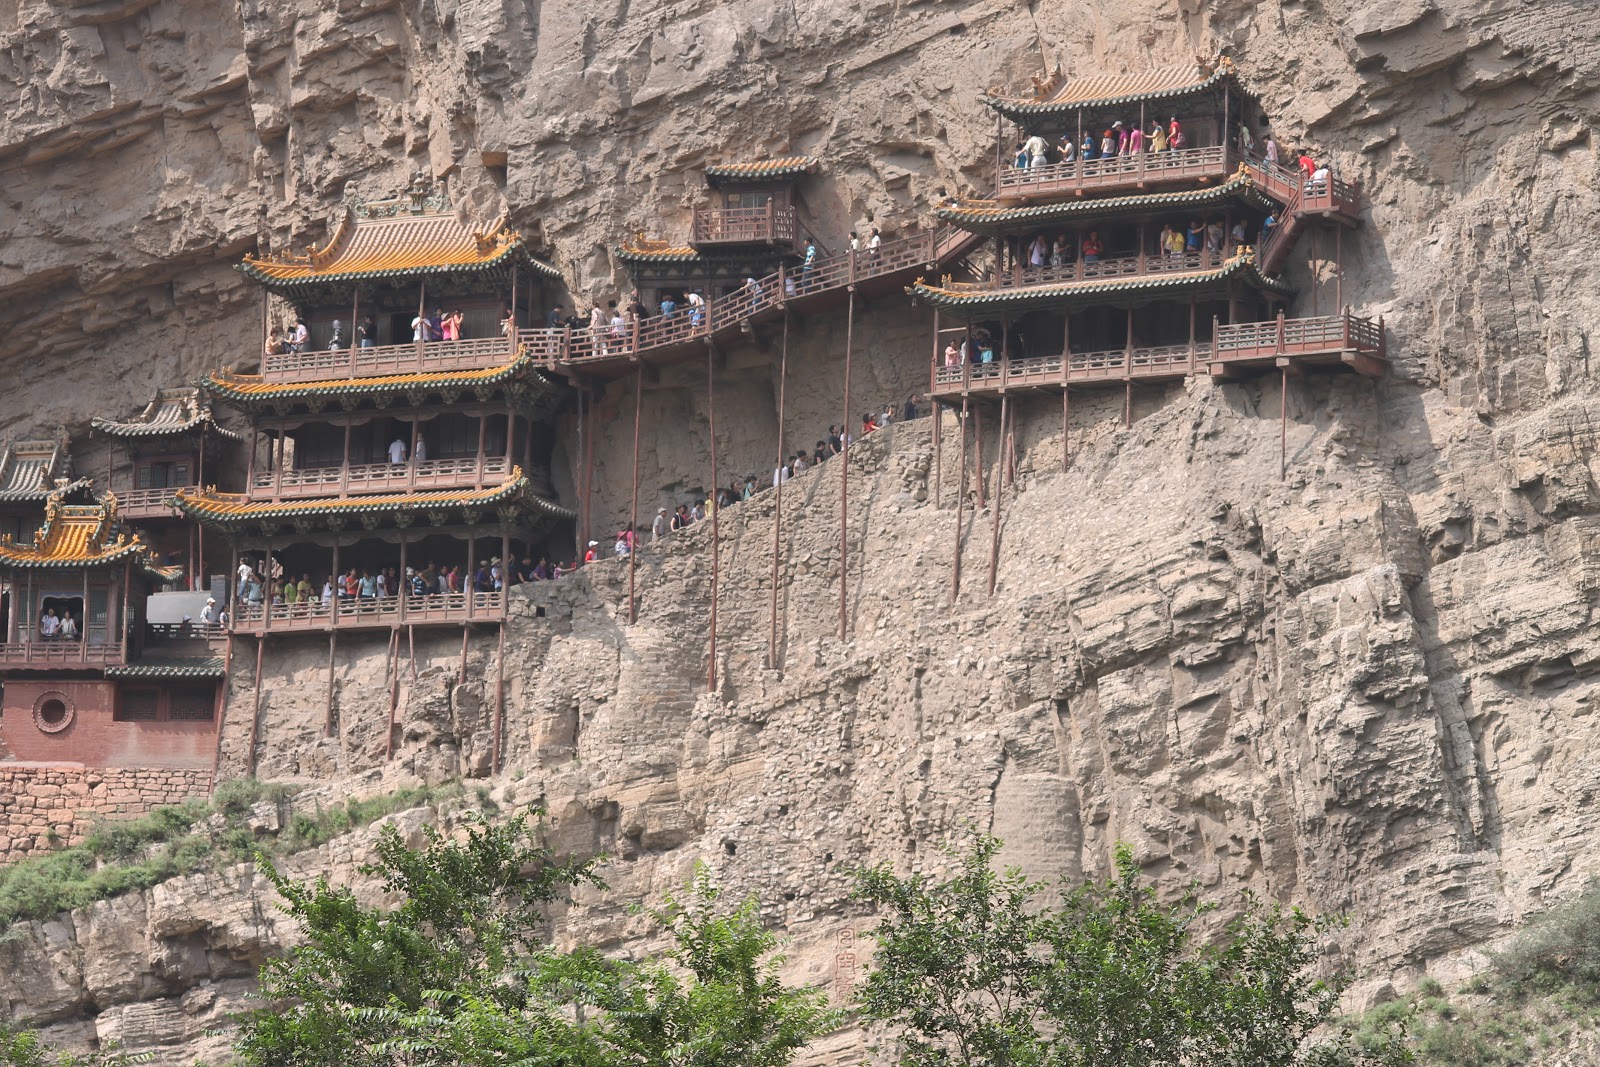 Una primera aproximación a China en el 2012 - Blogs de China - Datong: el monasterio colgante, la montaña de Heng Shan y las cuevas de Yungang (1)